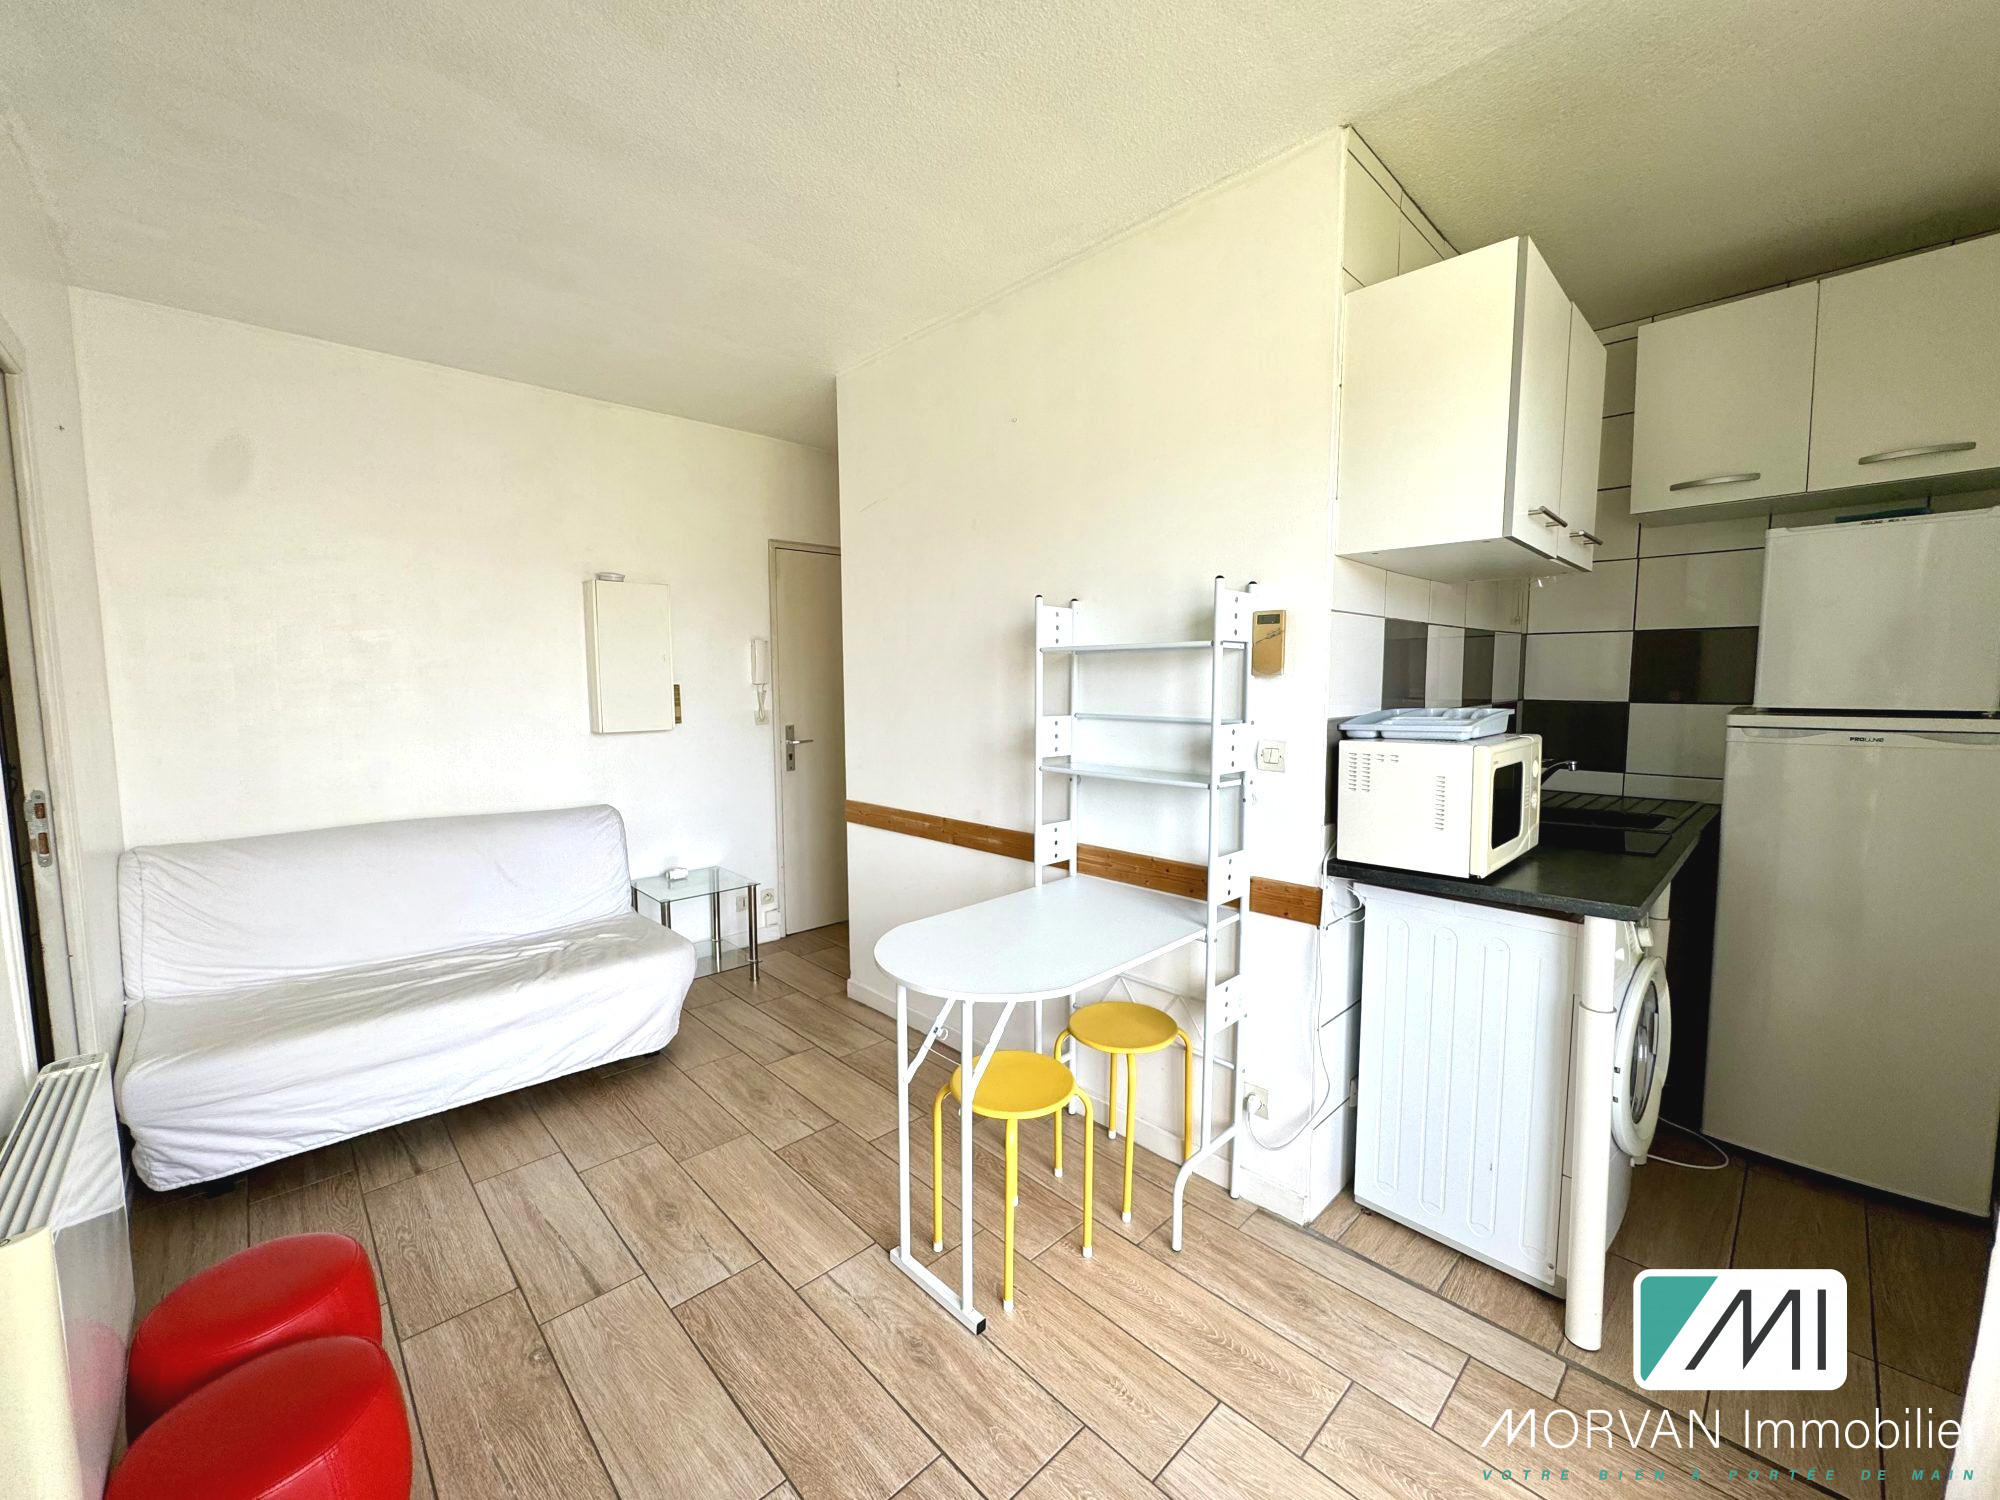 Appartement 1 pièce - 24m² - RAMBOUILLET